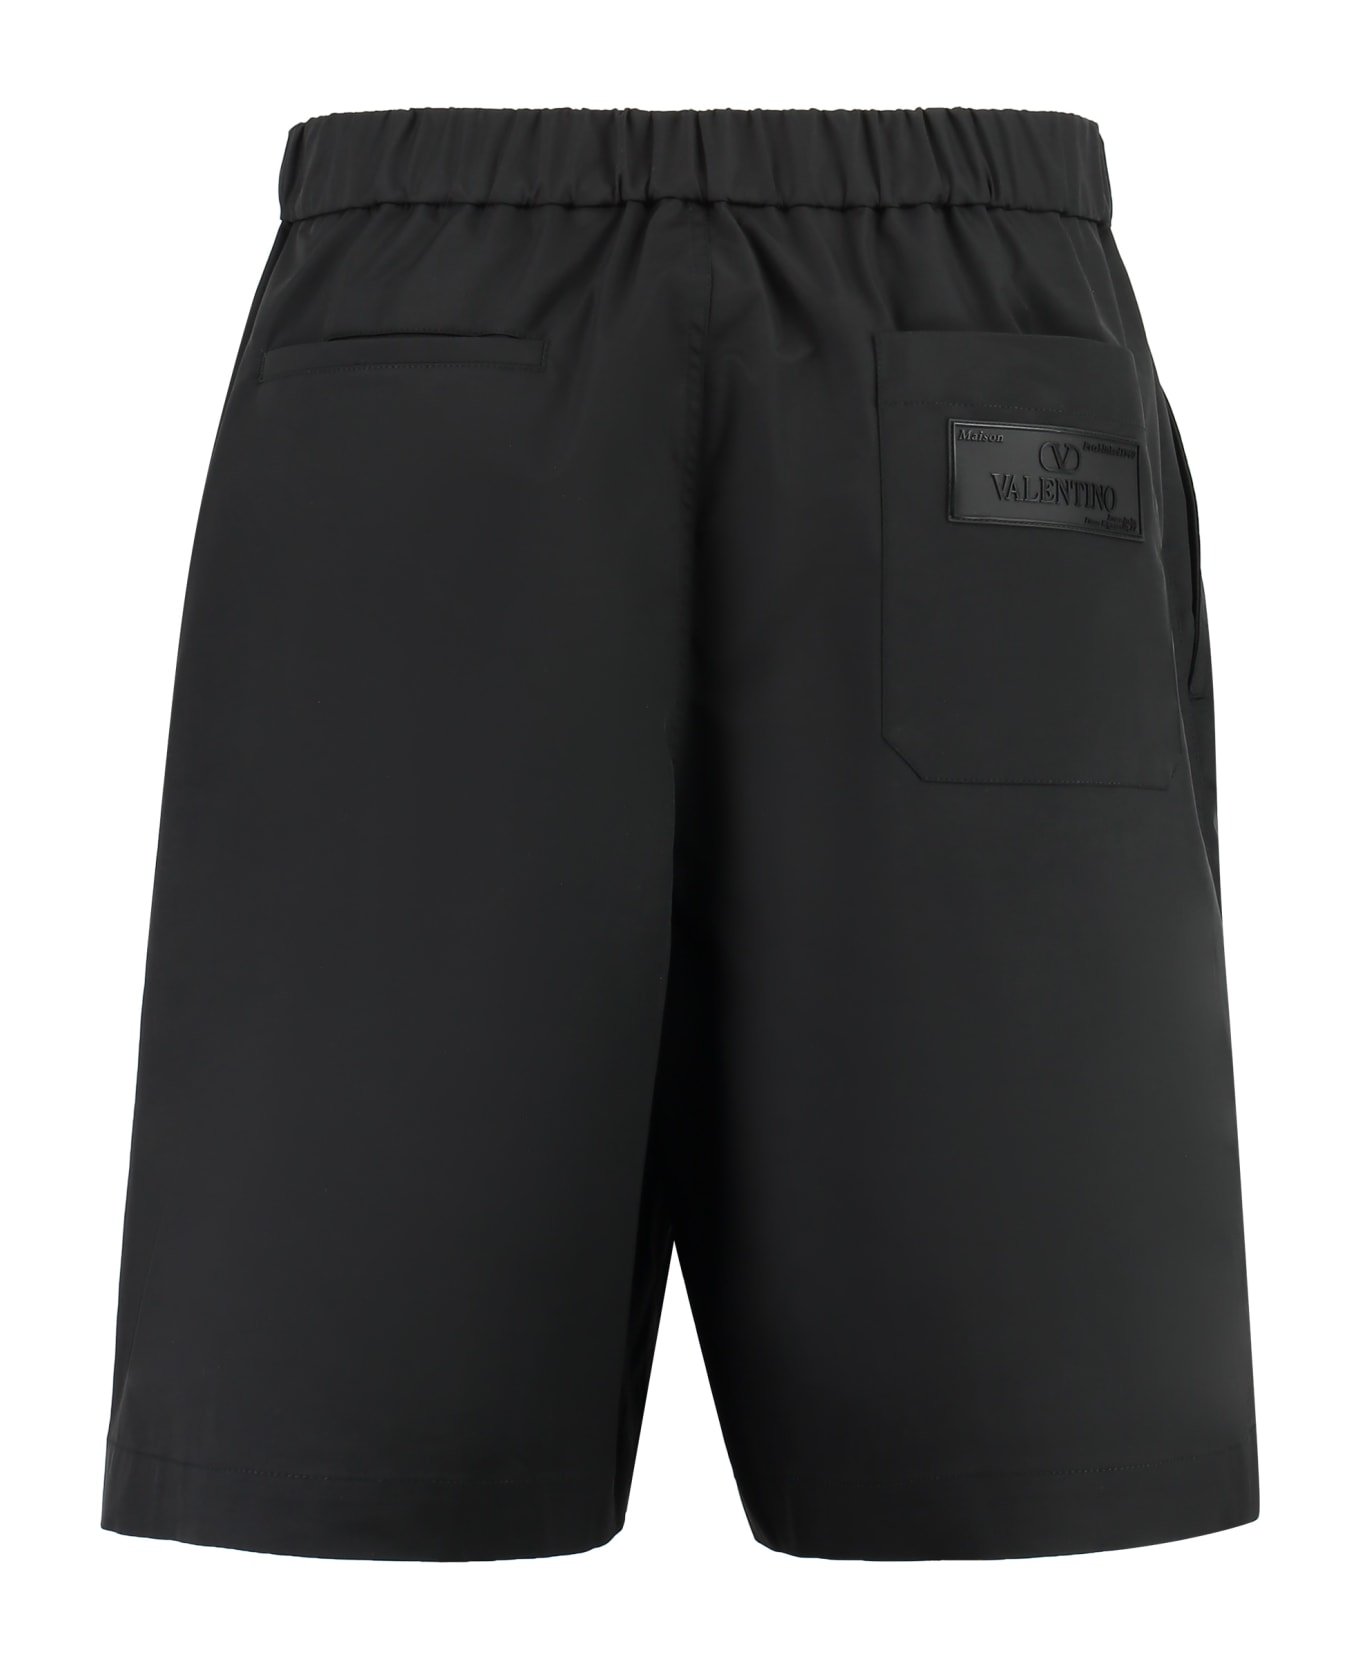 Valentino pink Nylon Bermuda Shorts - black